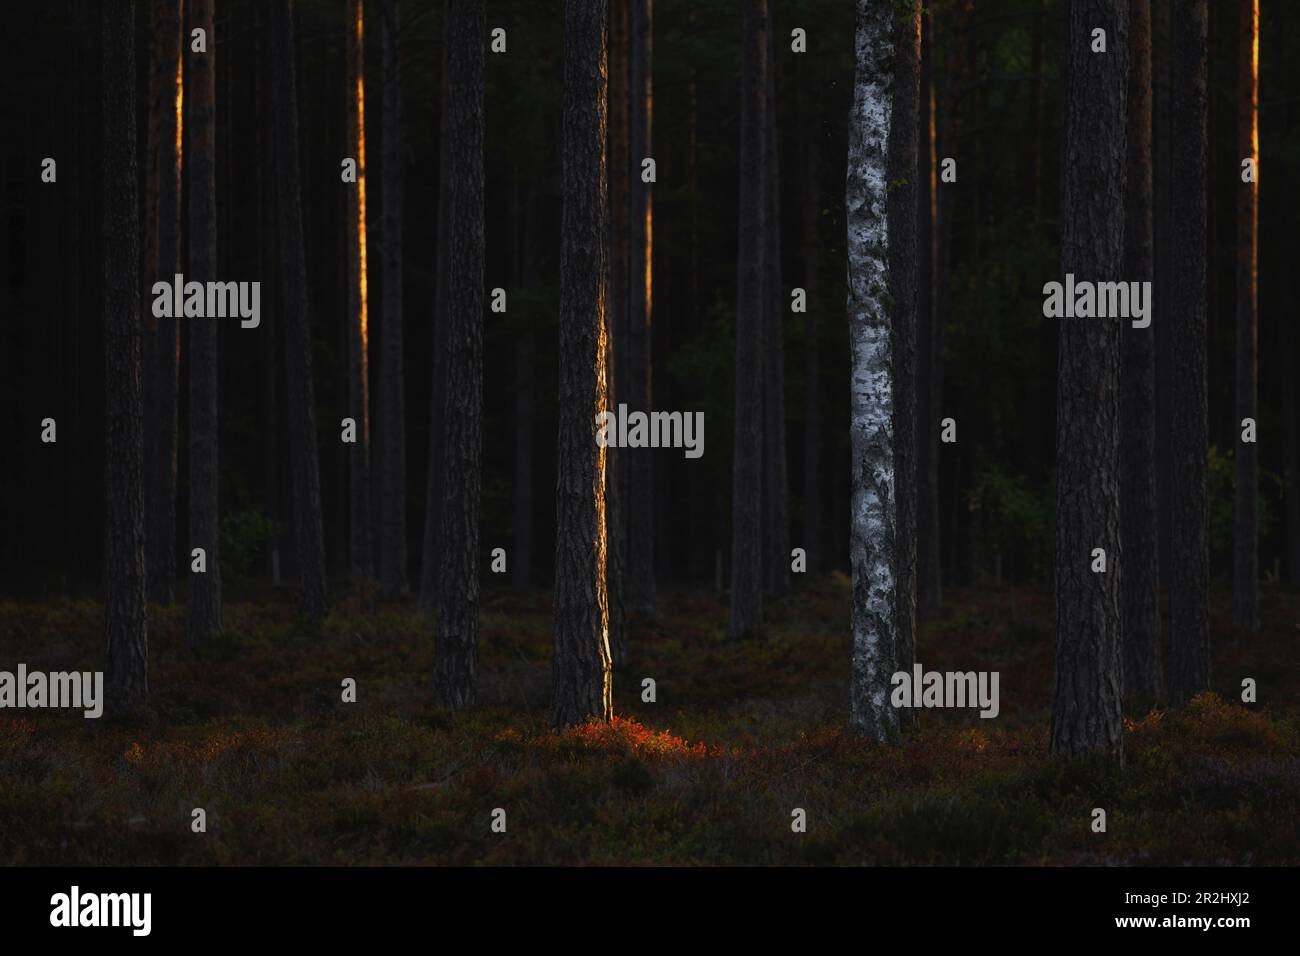 Plusieurs troncs d'épinette sombre se trouvent dans la forêt. Un bouleau clair entre les deux. Partiellement éclairé par le soleil. Byxelkrok, Oland, Suède Banque D'Images